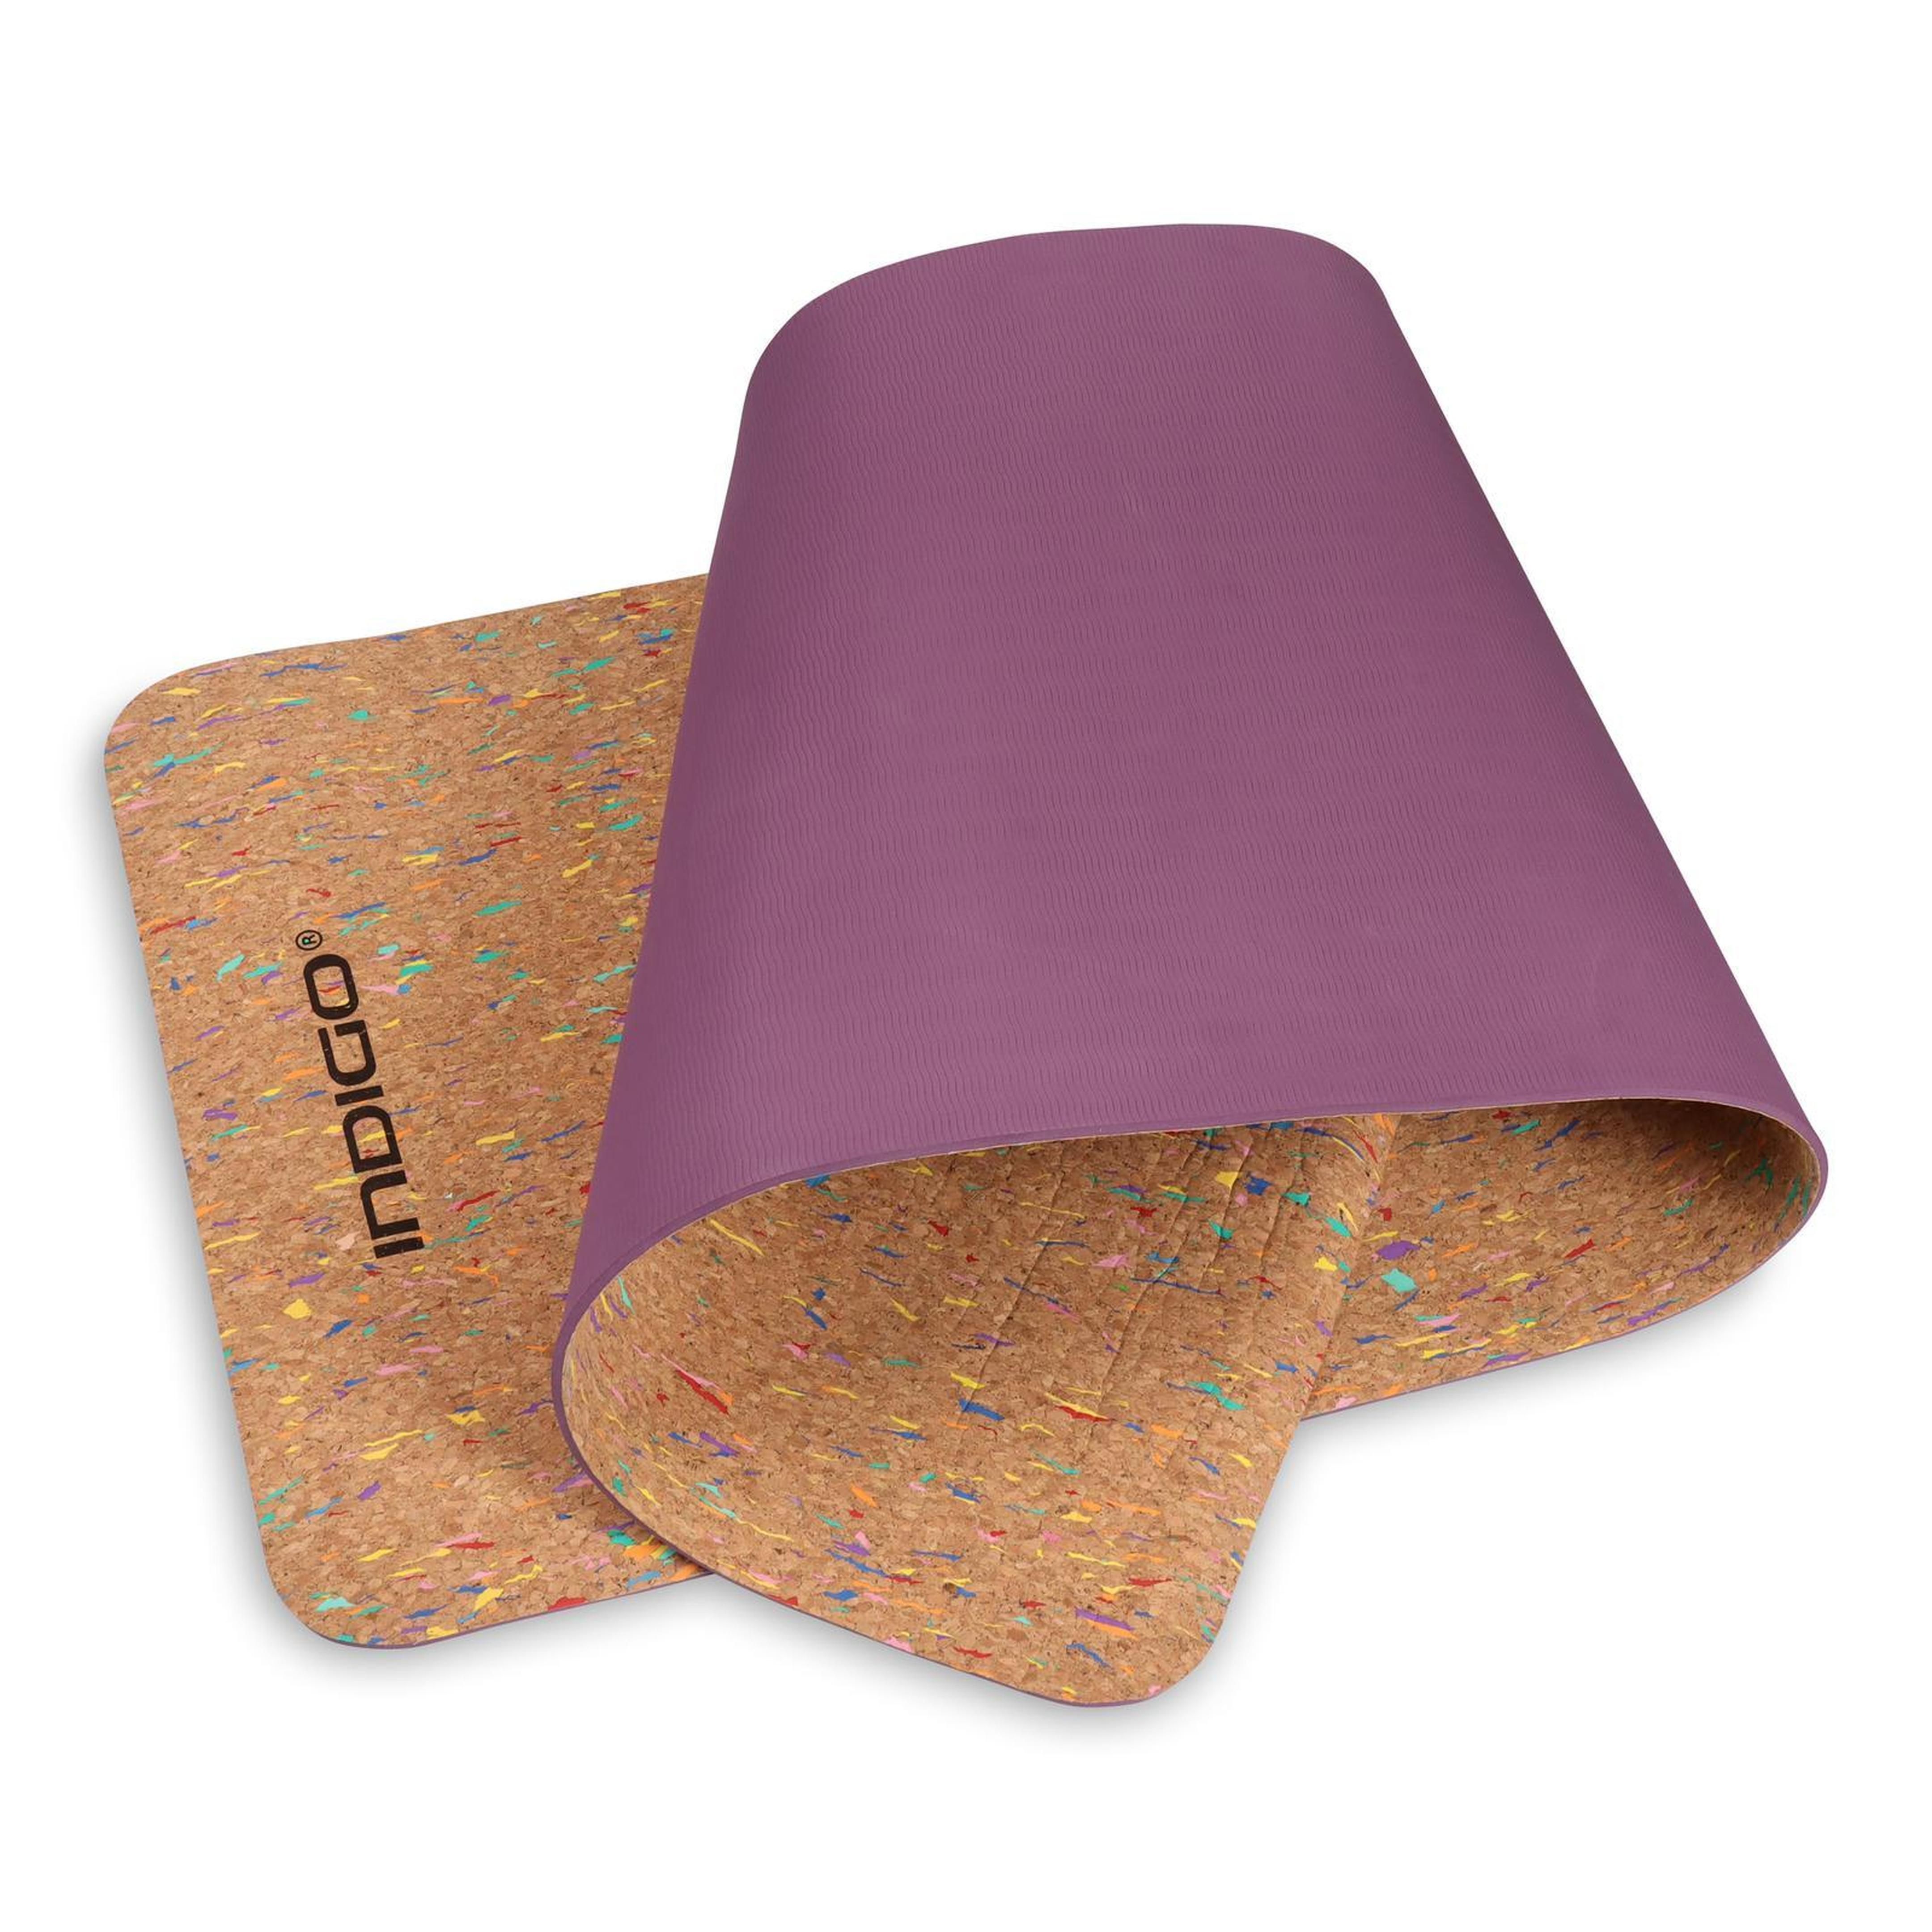 Esterilla de Yoga y Fitness TPE y CORCHO INDIGO 173* 61* 0,6 cm Marrón- Violeta